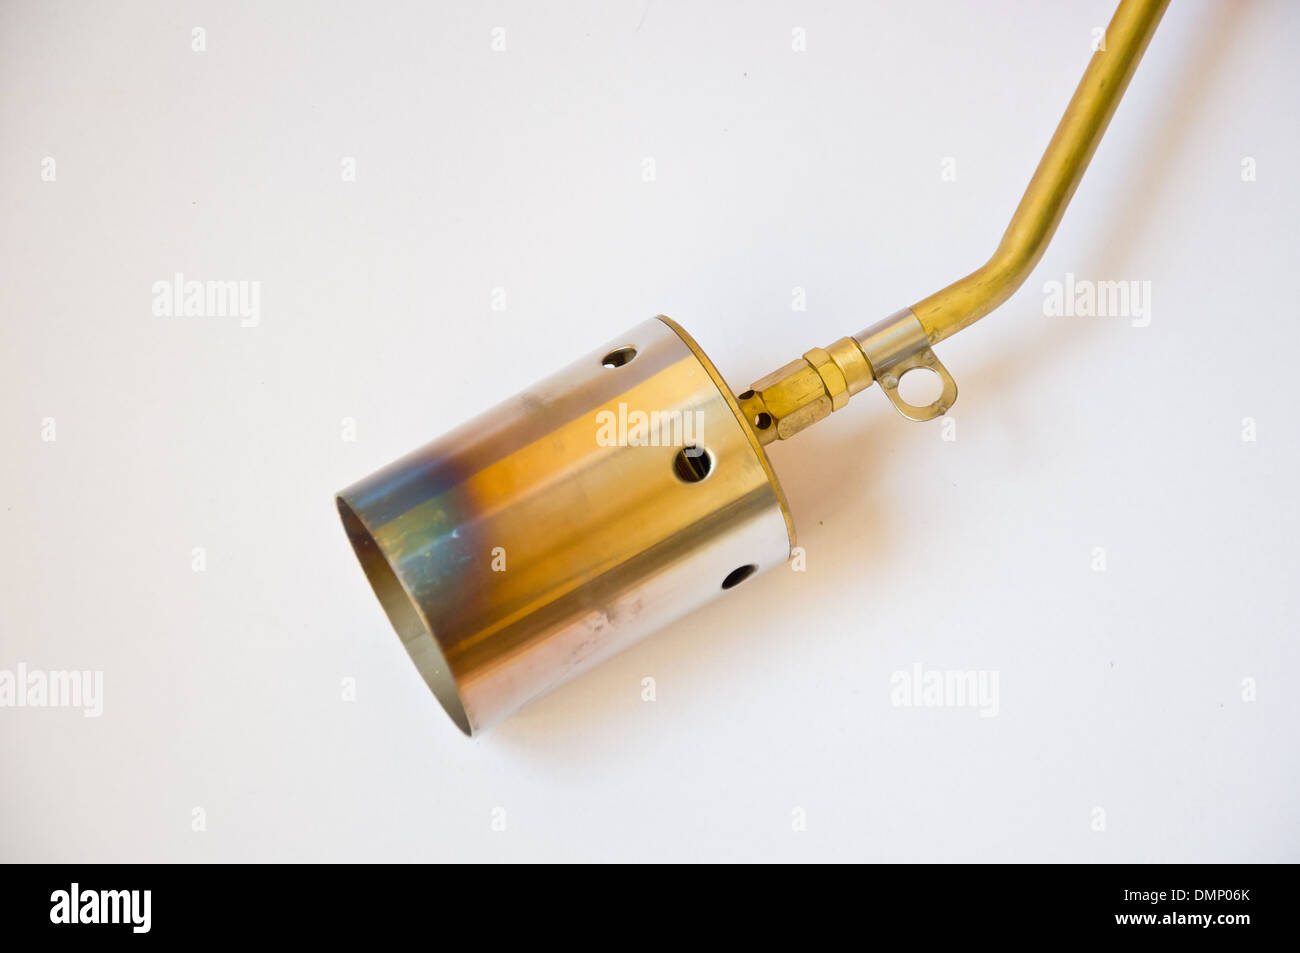 burner nozzle on white background Stock Photo